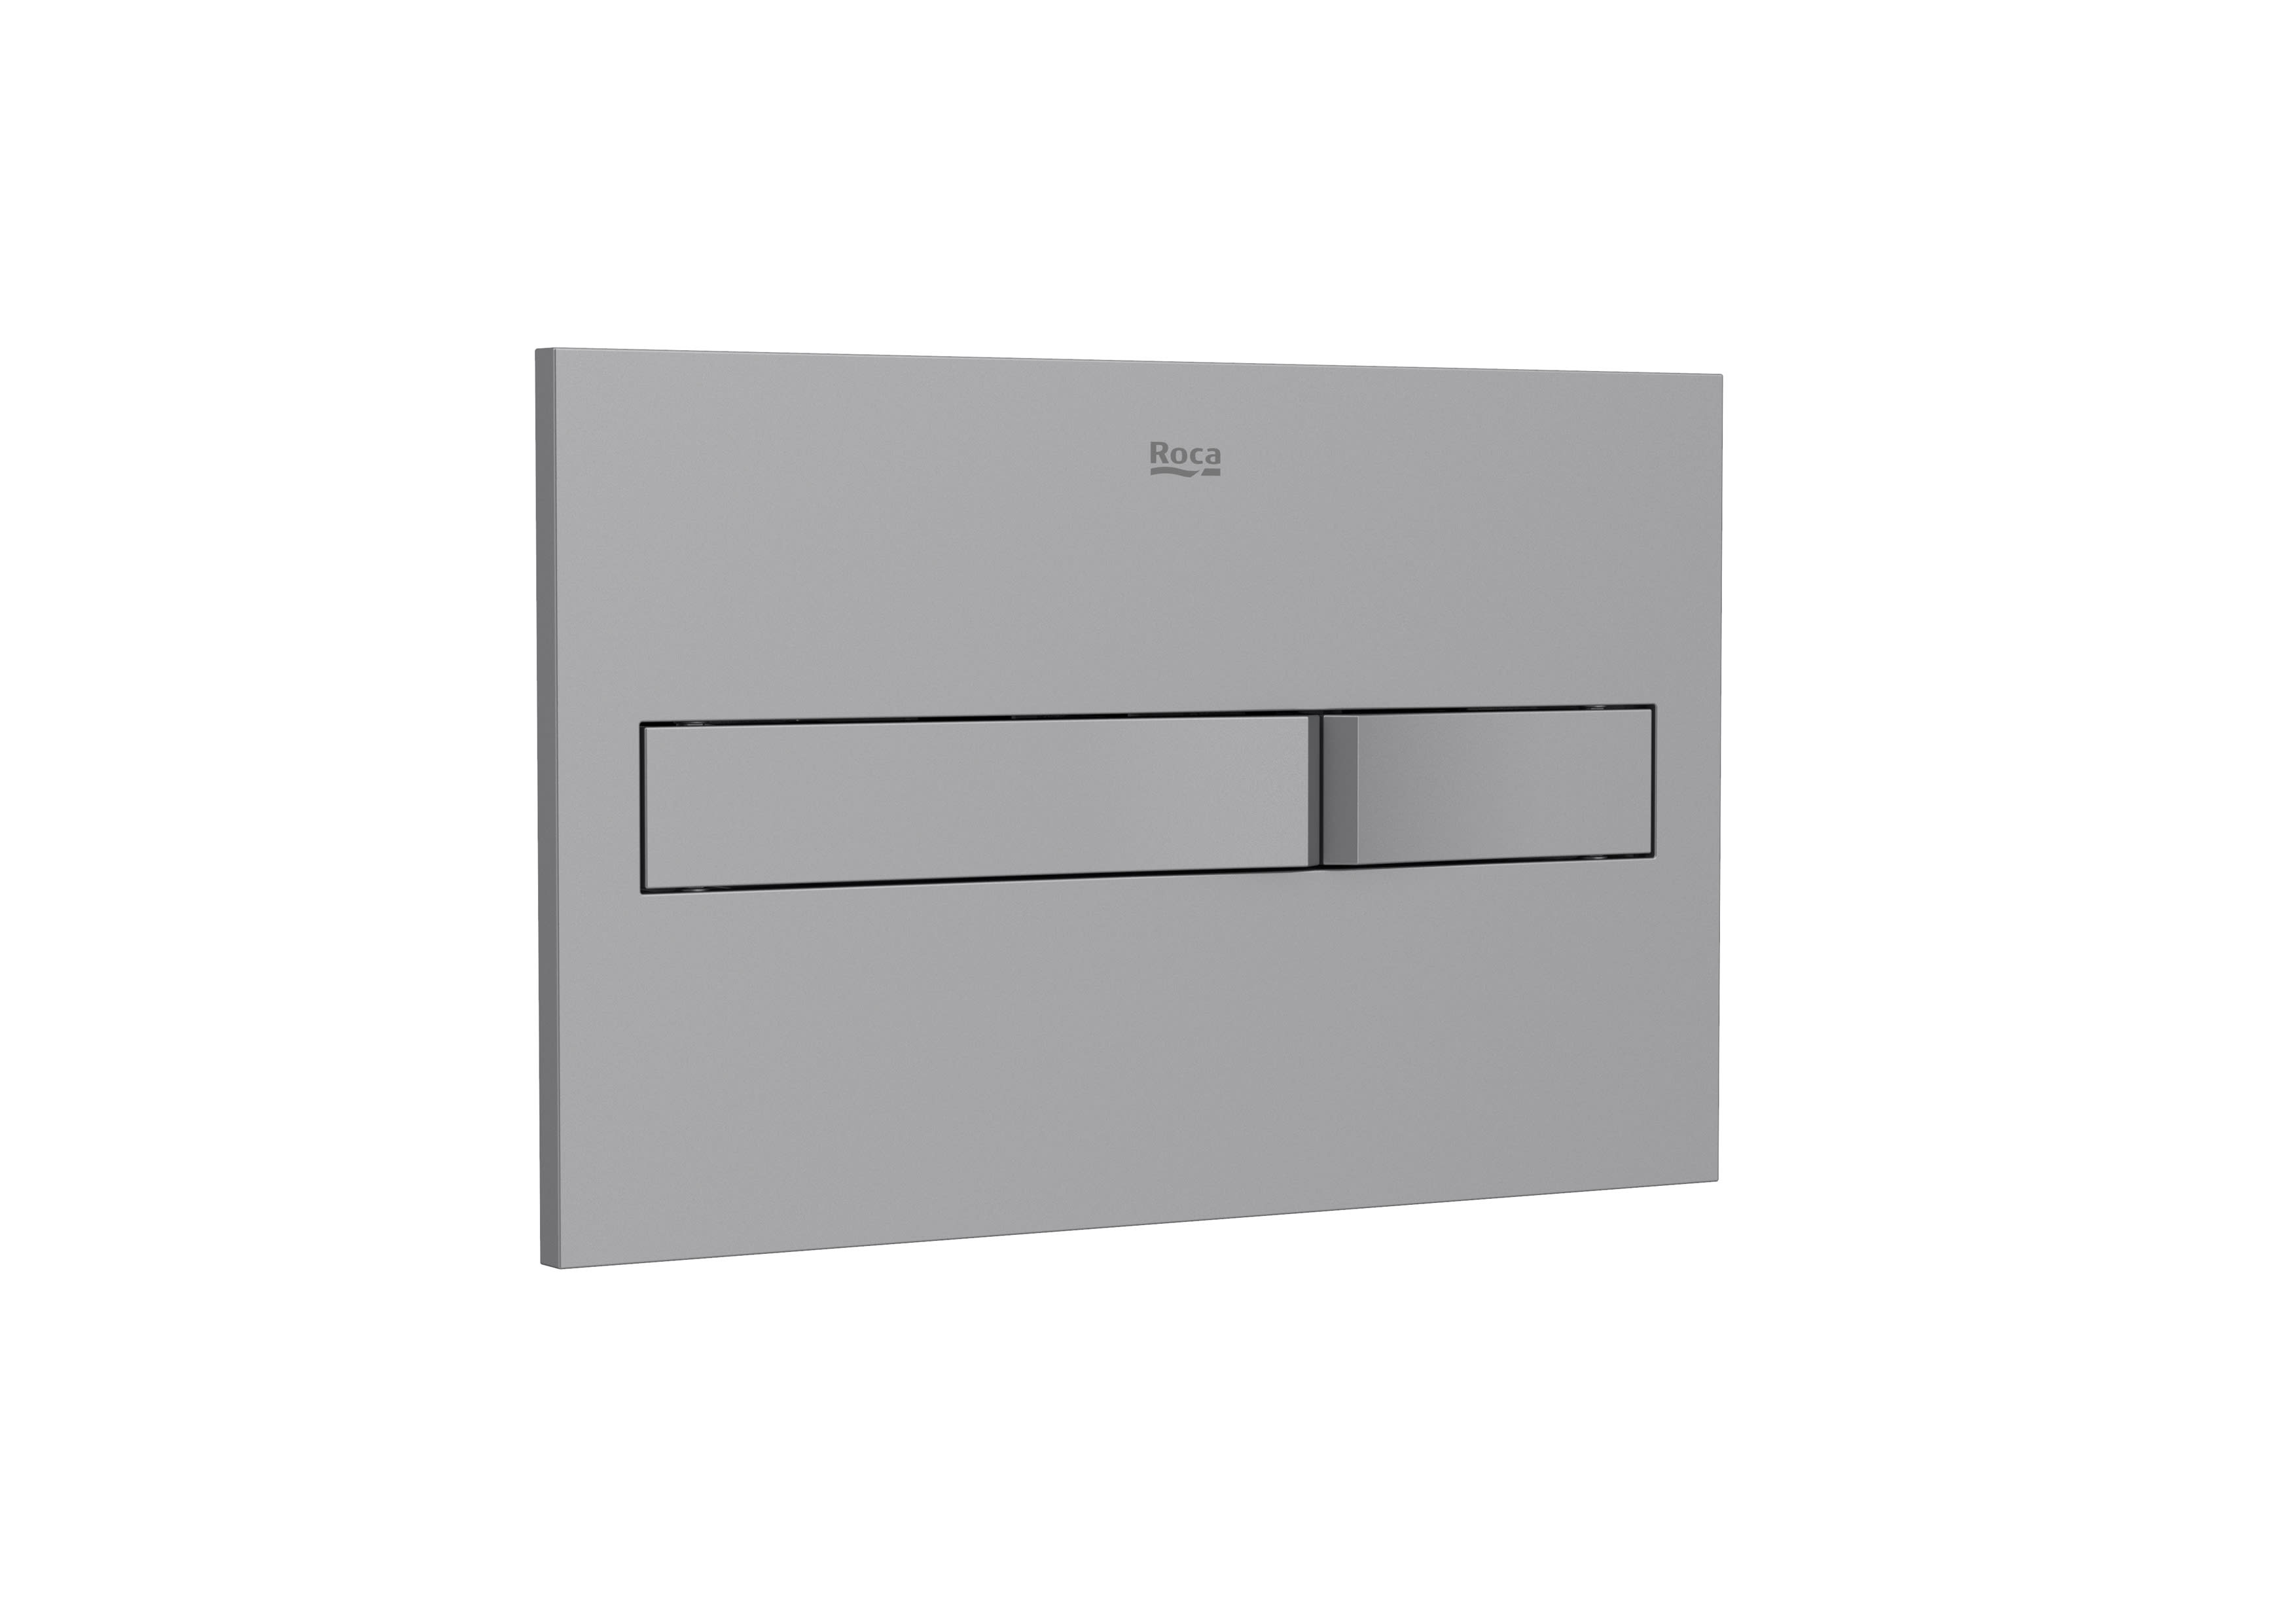 Placa de accionamiento para inodoro Roca In-Wall PL2 Dual One descarga doble pulsador gris